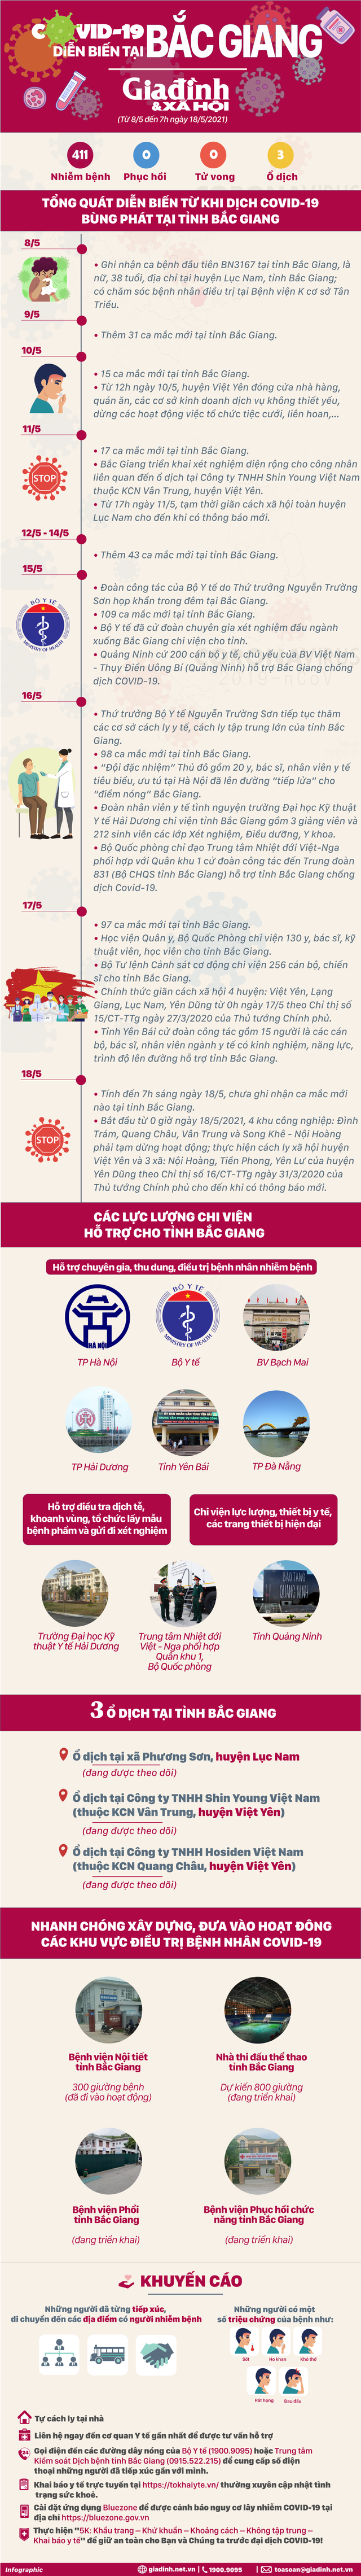 [Infographic] - Toàn cảnh cuộc chiến với COVID-19 ở Bắc Giang  - Ảnh 1.